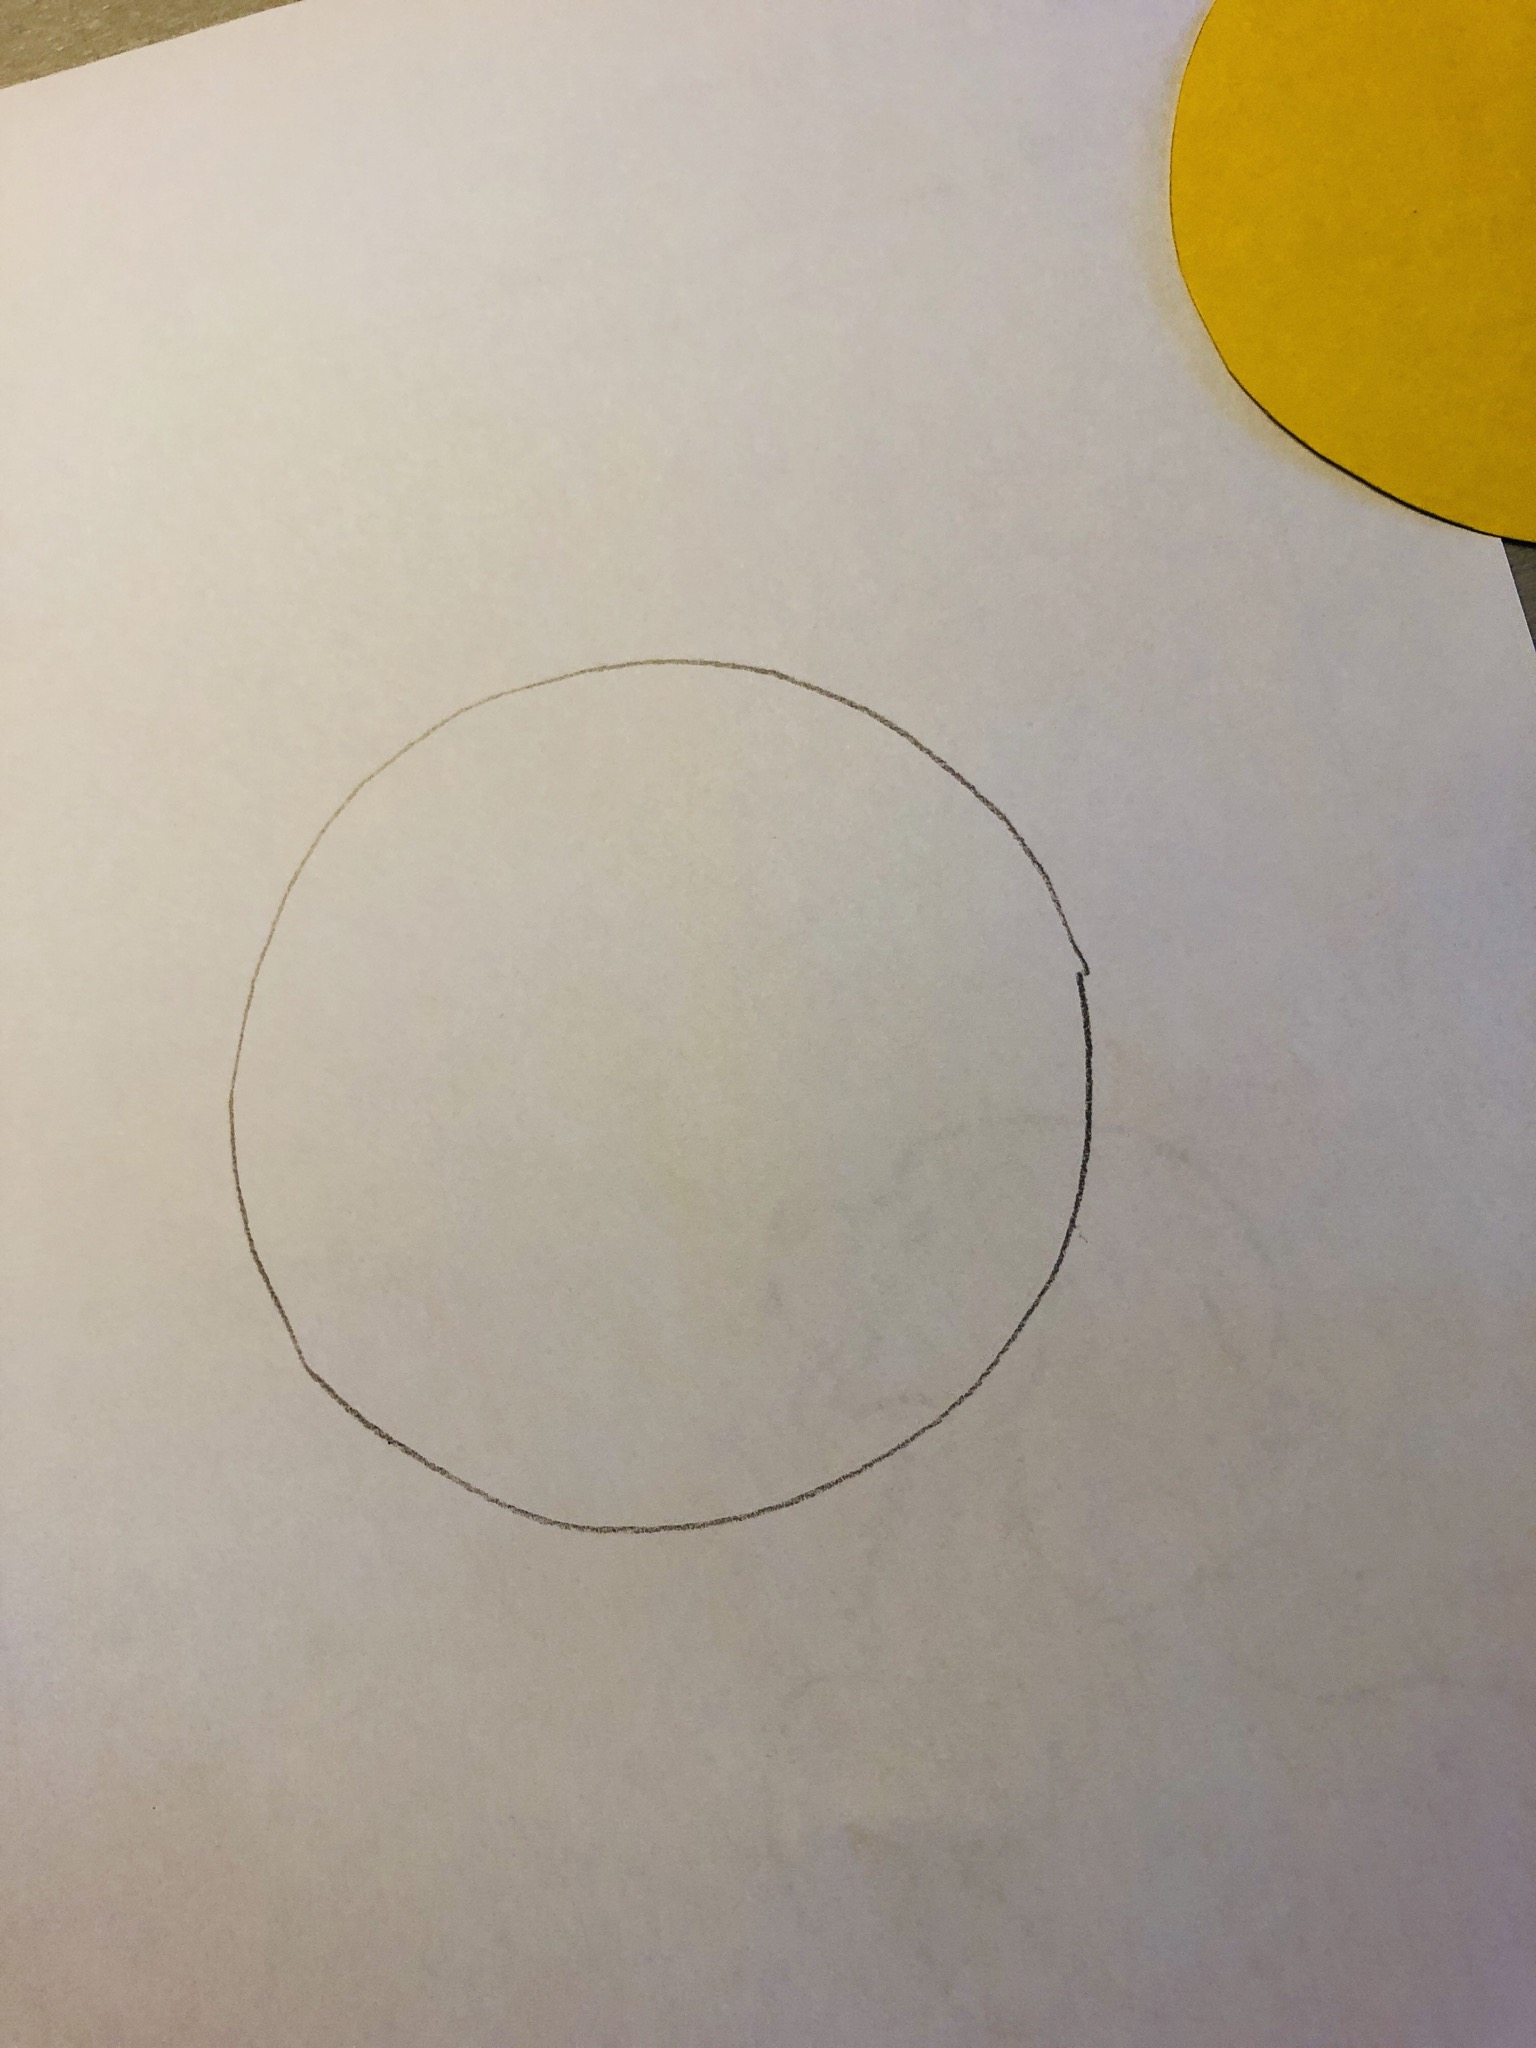 Bild zum Schritt 5 für das Bastel- und DIY-Abenteuer für Kinder: 'Legt den Tonpapier-Kreis zur Seite.'